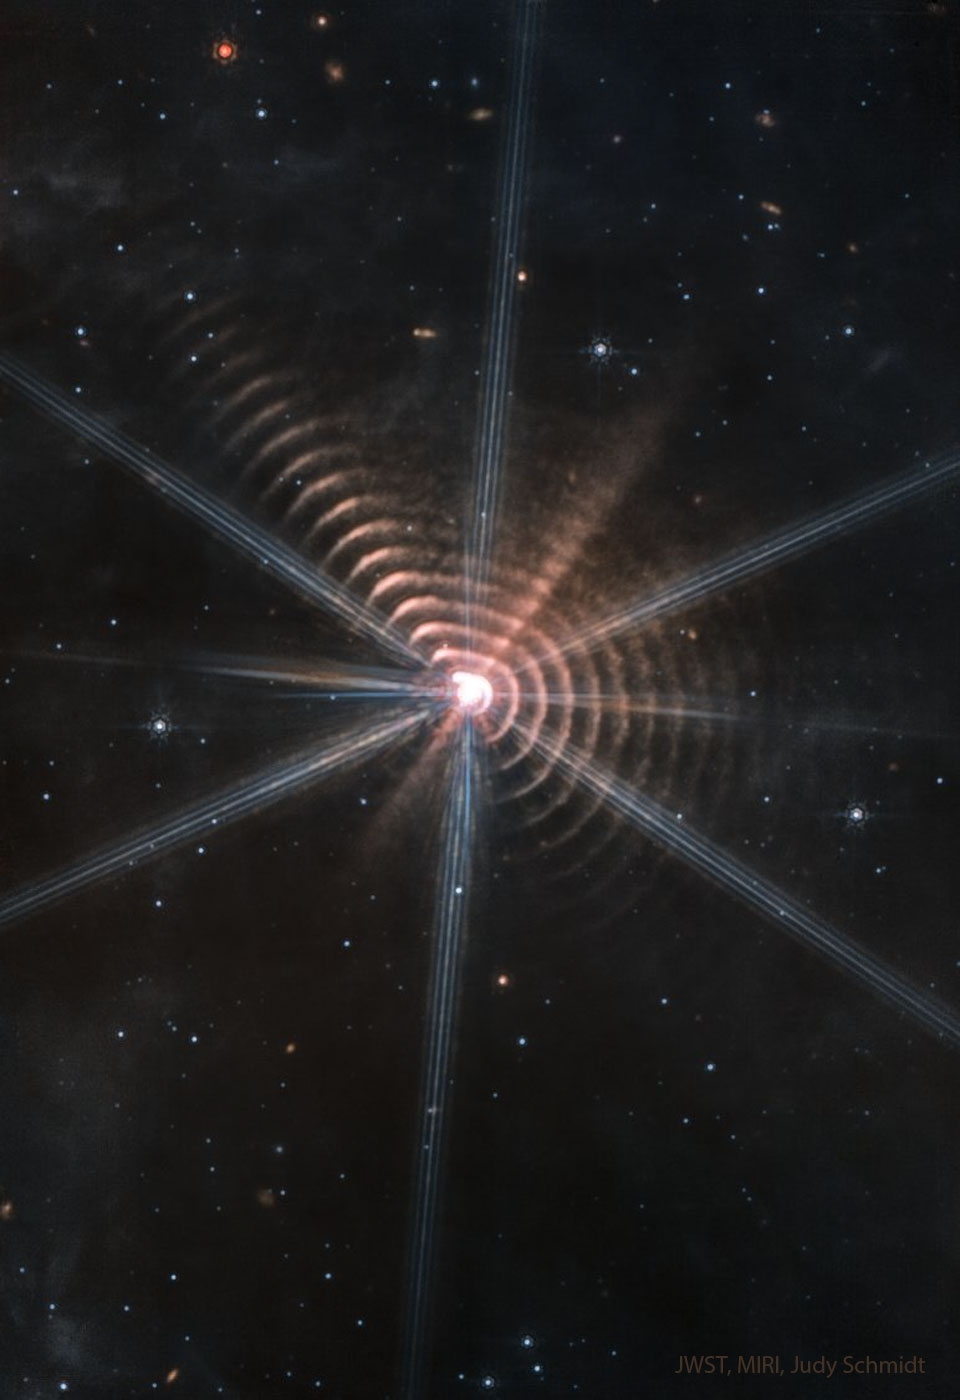 这张特写图片显示了围绕中心恒星的许多尘埃环。其他恒星在其他黑暗的区域也可以看到。有关详细信息，请参阅说明。